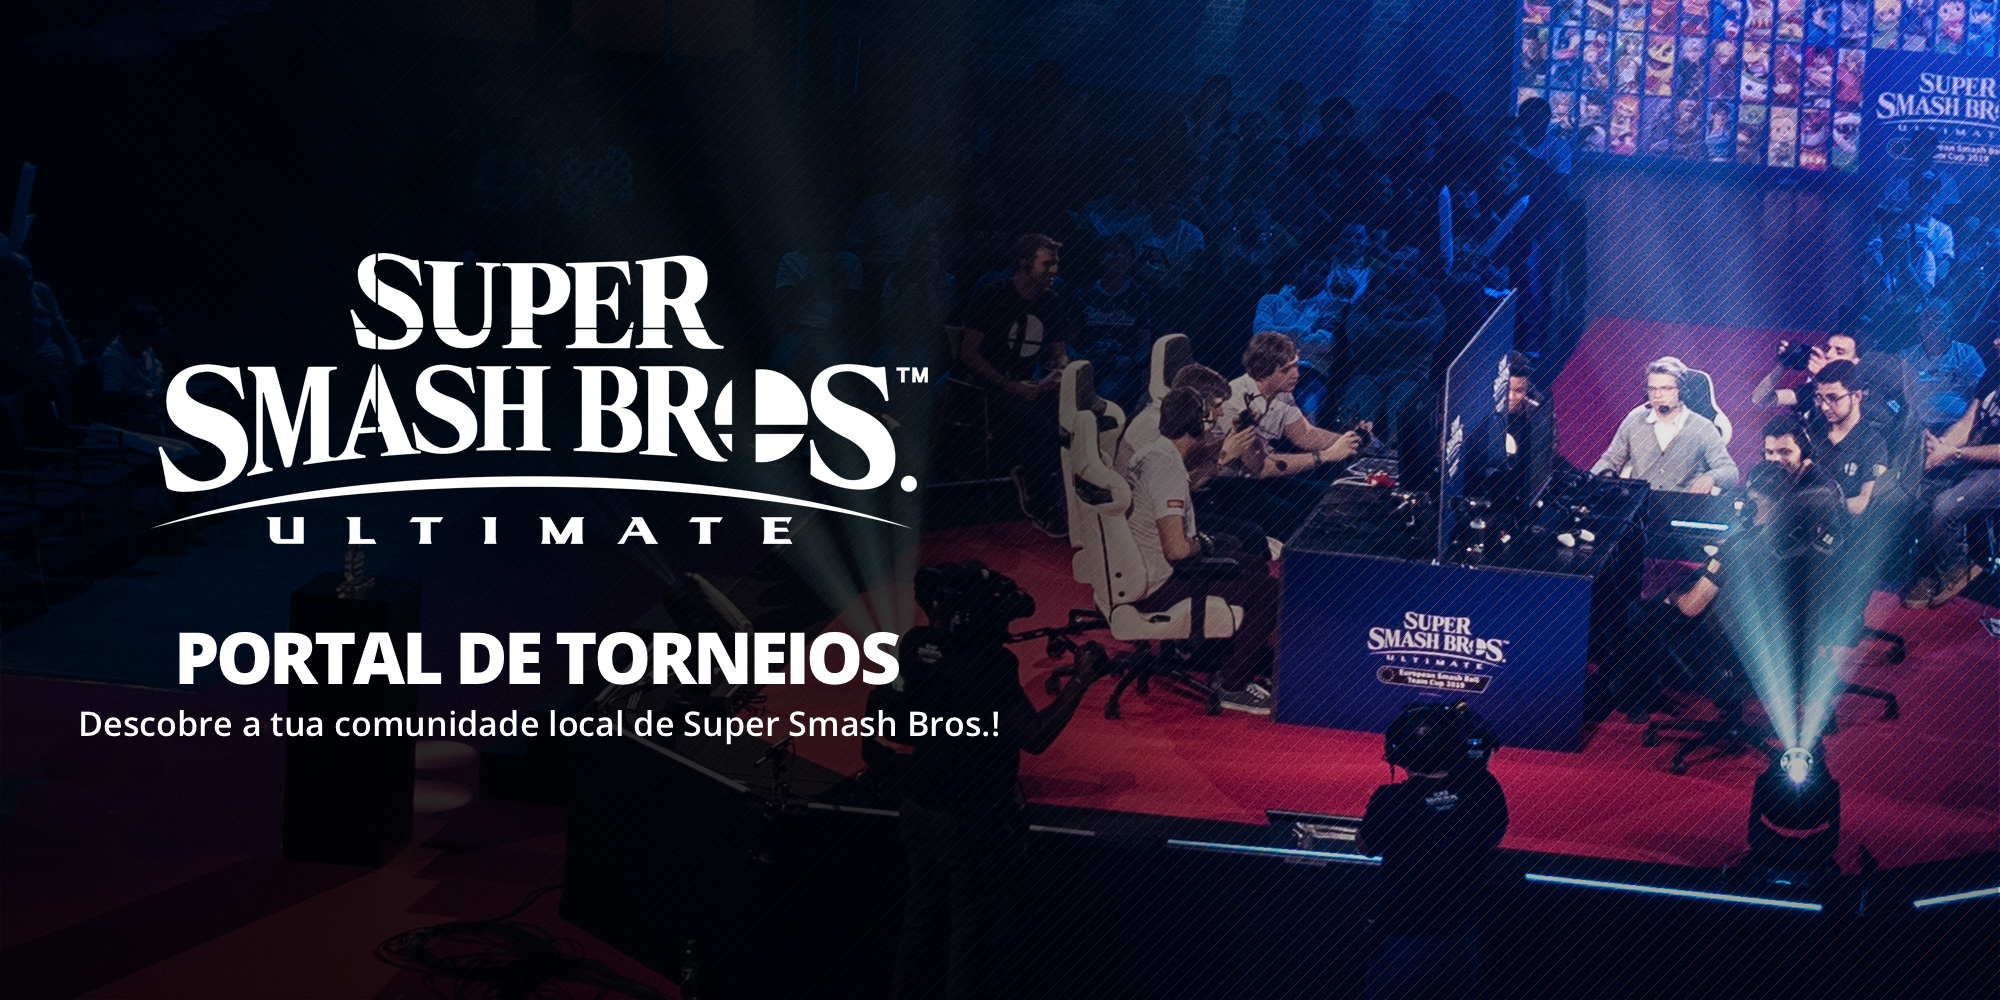 Encontra um torneio perto de ti no novo portal de torneios de Super Smash Bros. Ultimate!